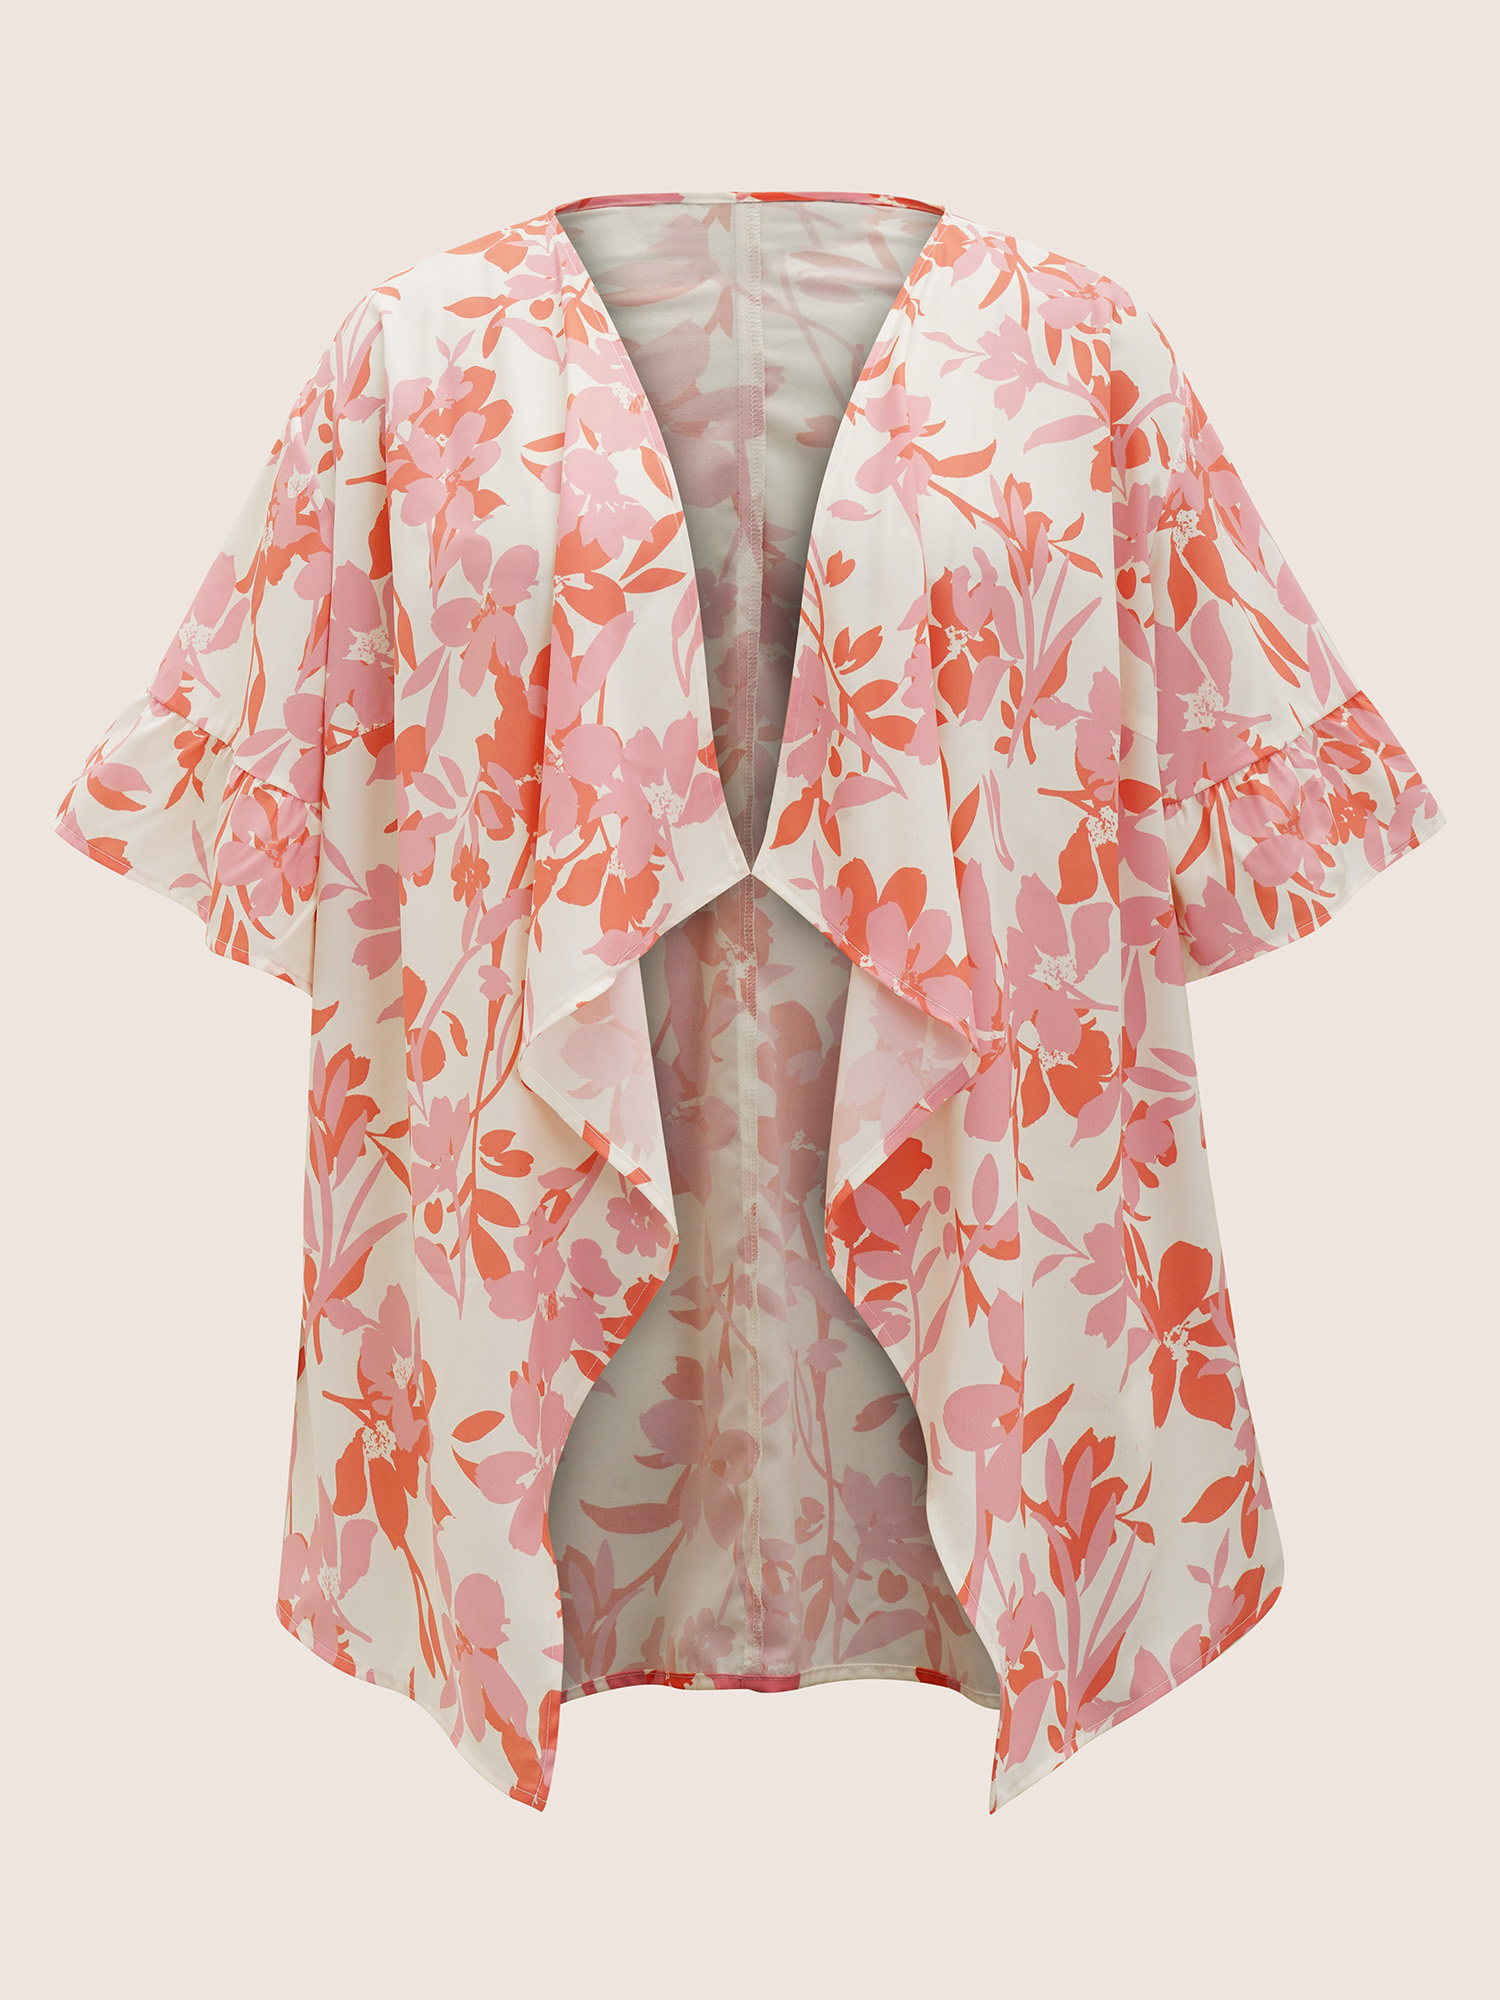 

Plus Size Silhouette Floral Print Ruffle Trim Kimono Women Salmon Elegant Ruffles Loose Everyday Kimonos BloomChic